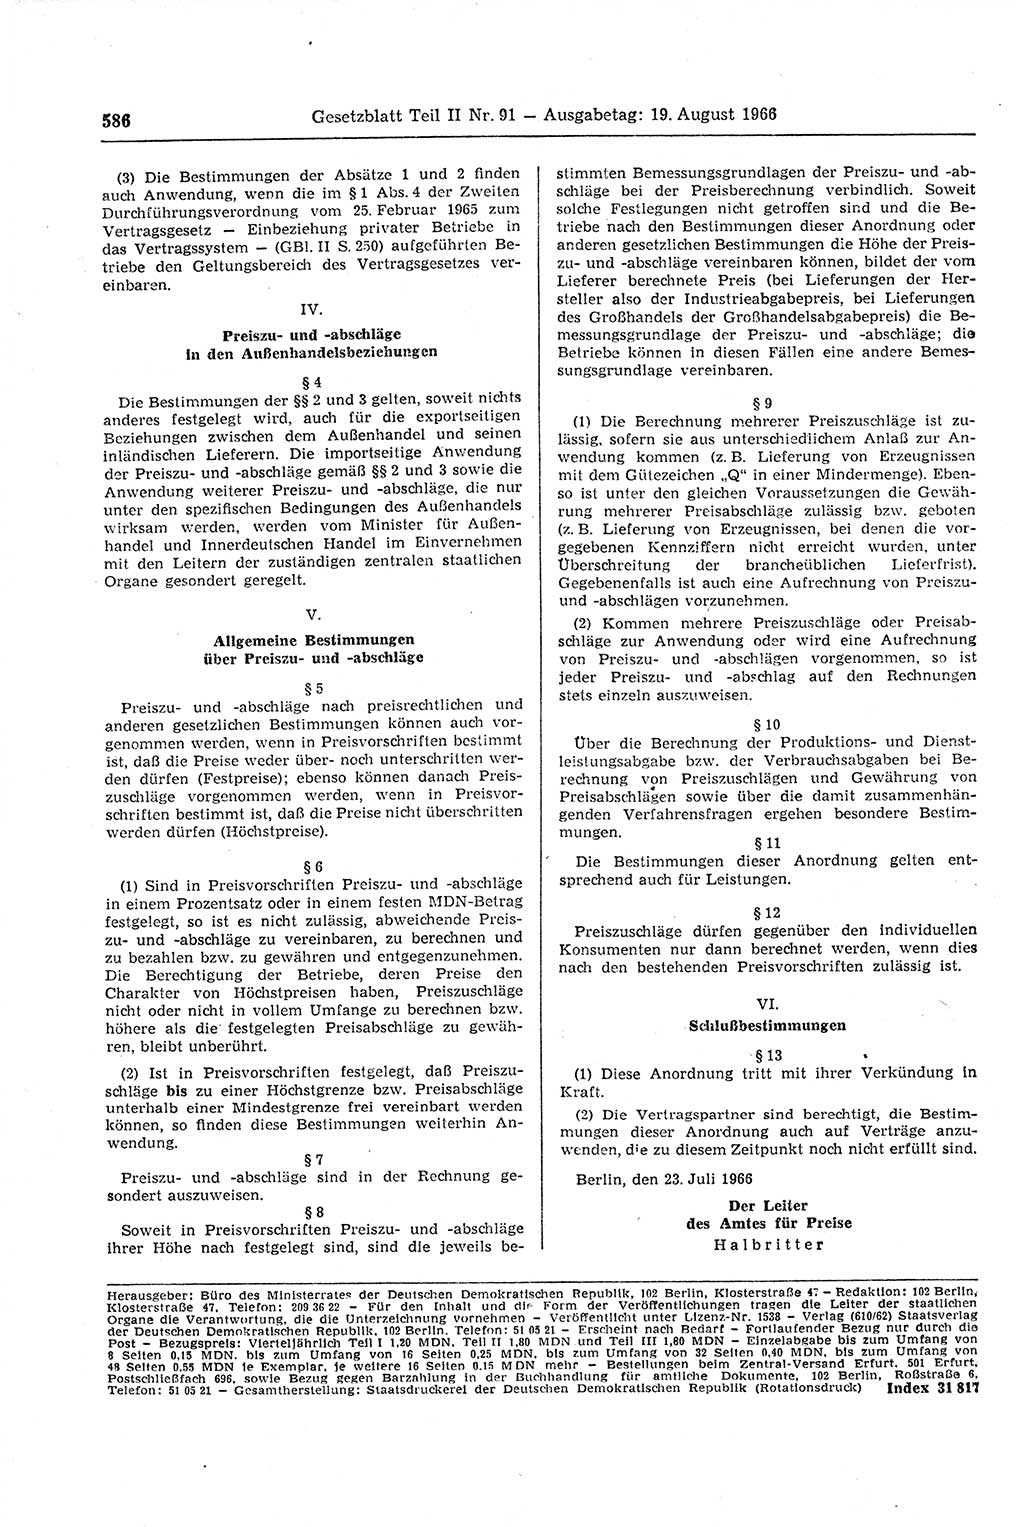 Gesetzblatt (GBl.) der Deutschen Demokratischen Republik (DDR) Teil ⅠⅠ 1966, Seite 586 (GBl. DDR ⅠⅠ 1966, S. 586)